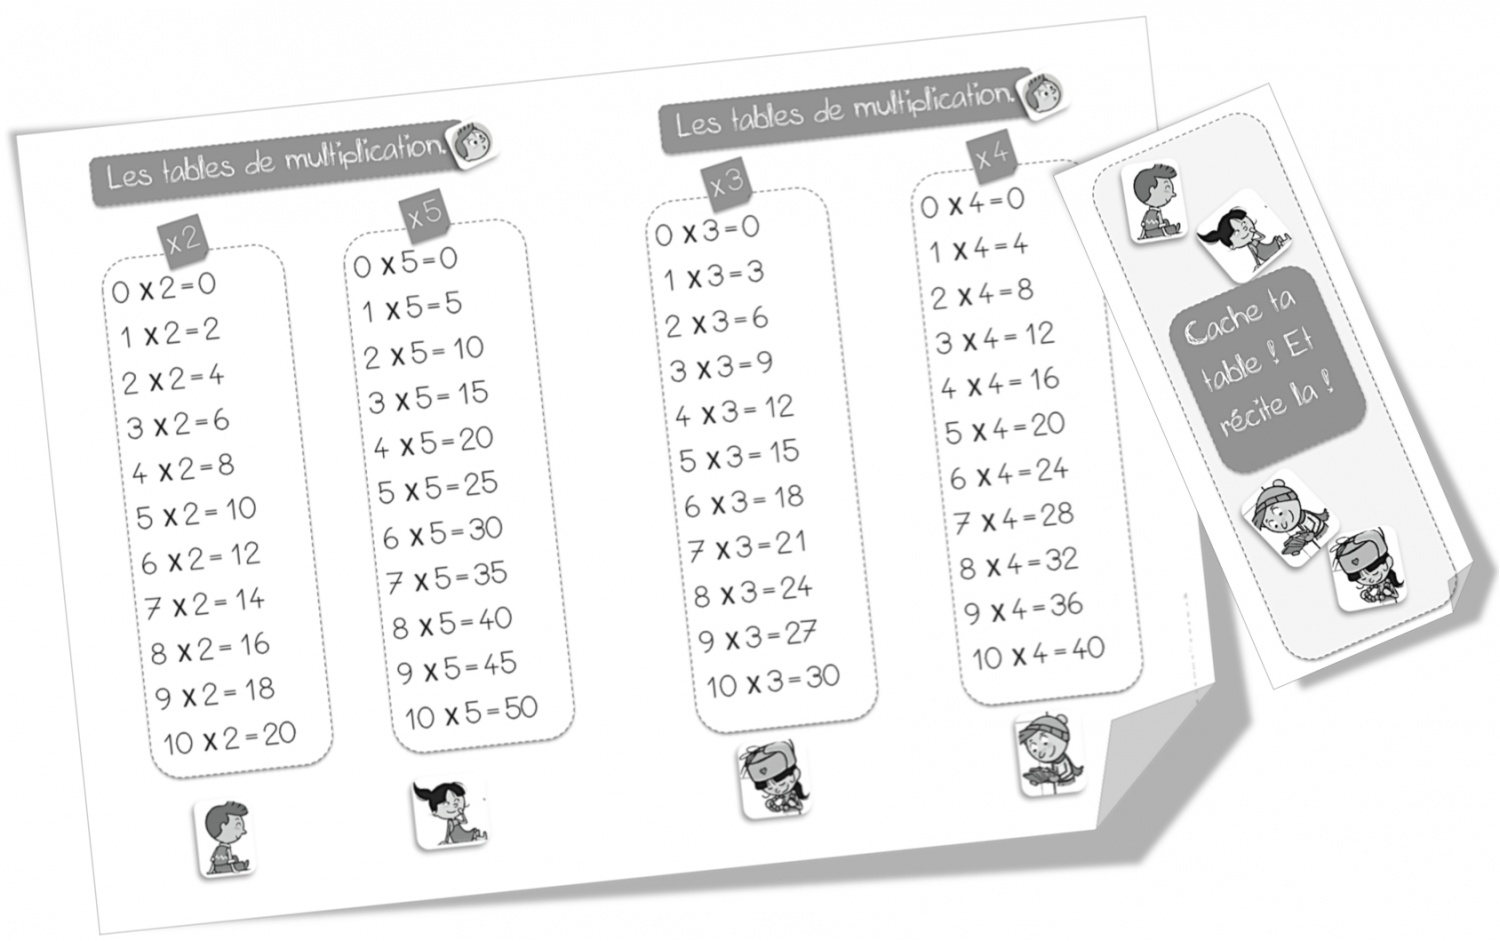 Tables de multiplication (1 à 5) puis (6 à 9) ; leçon et exercices CE2